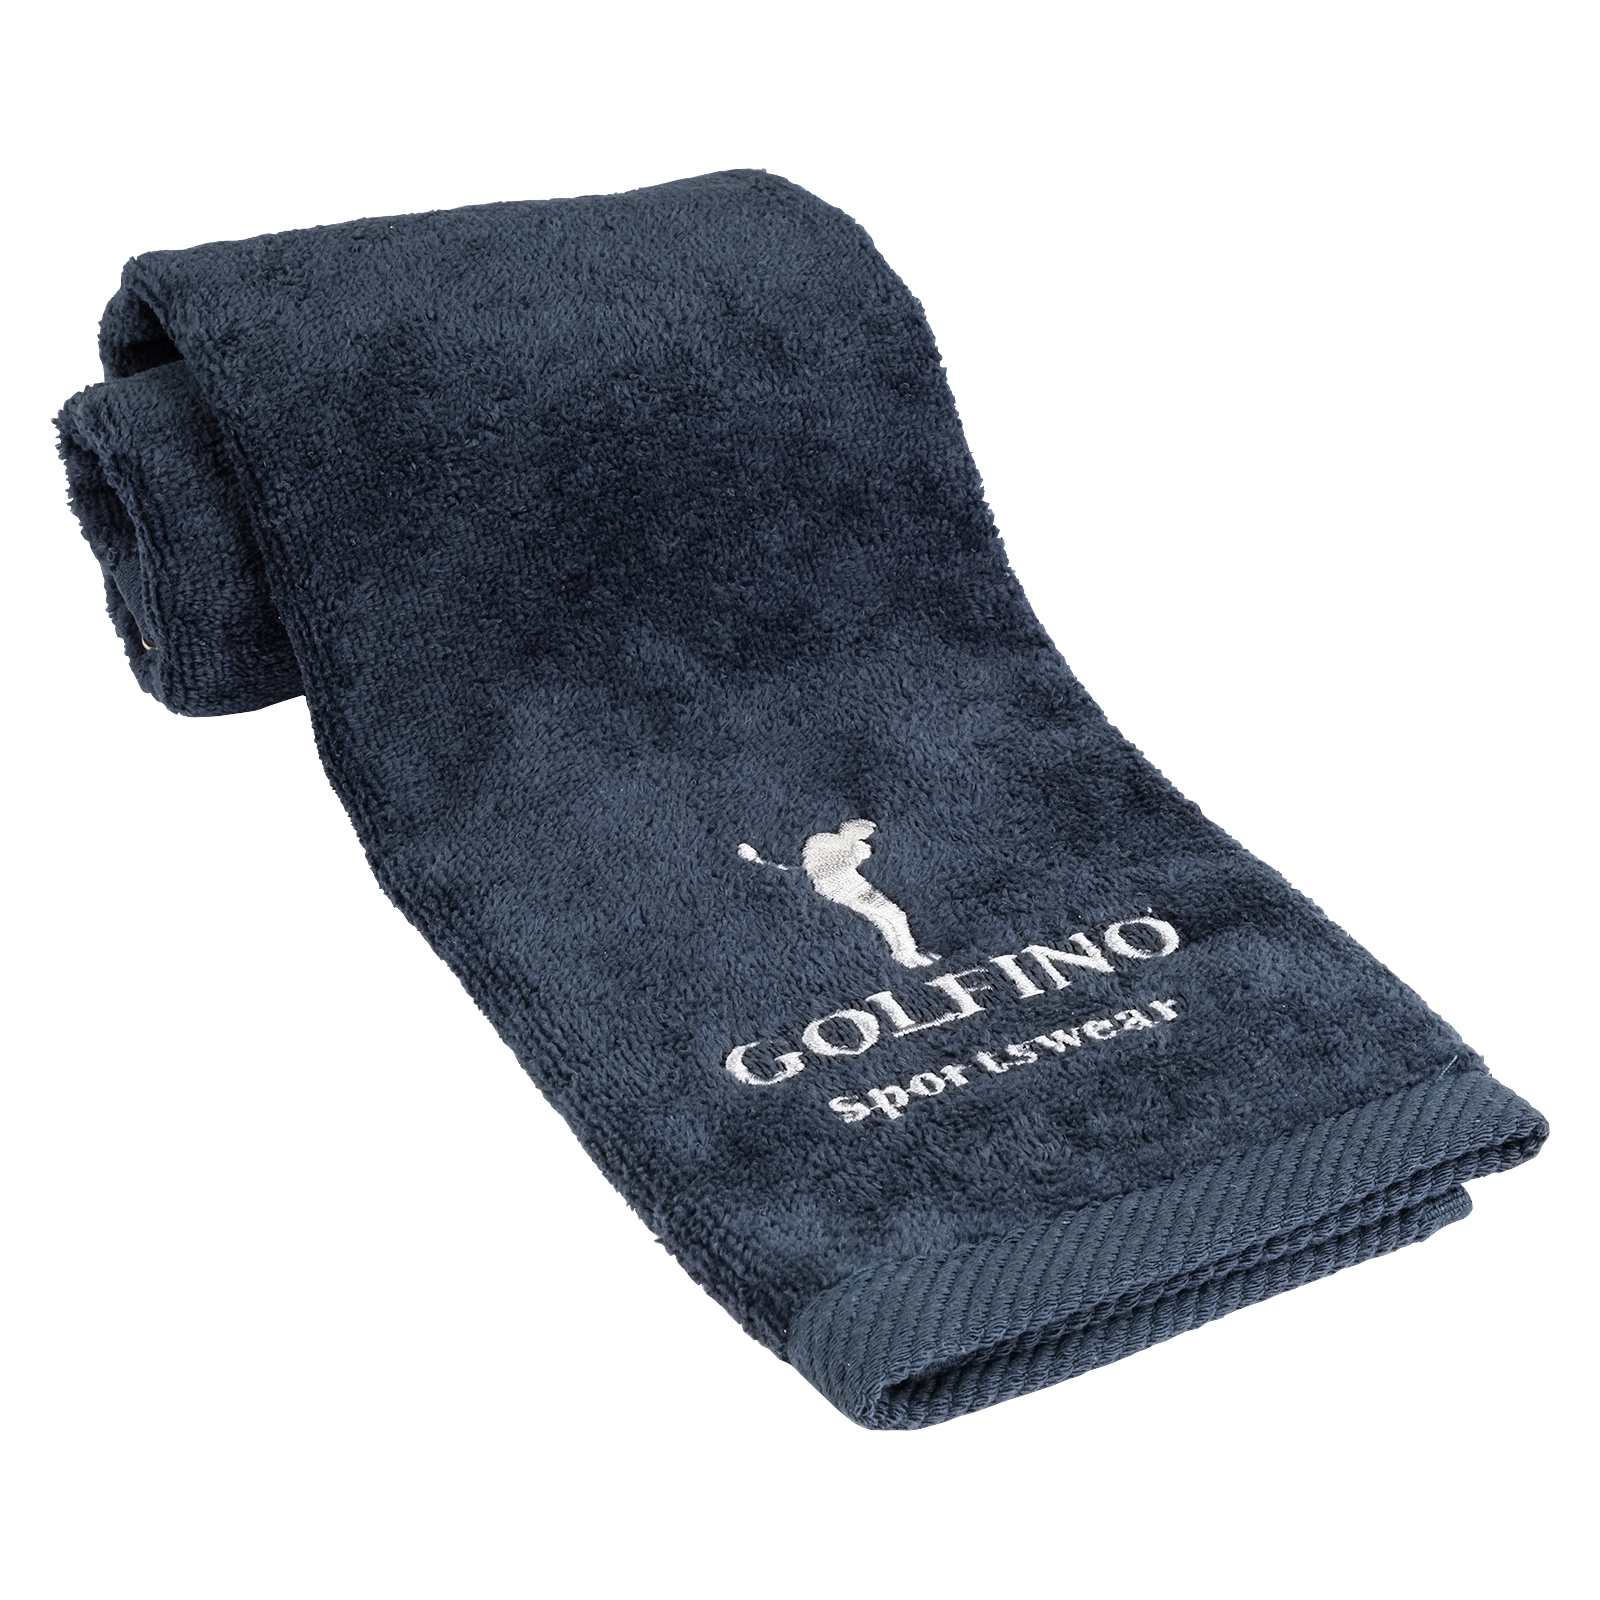 Absorberende golfhanddoek voor clubs en uitrusting